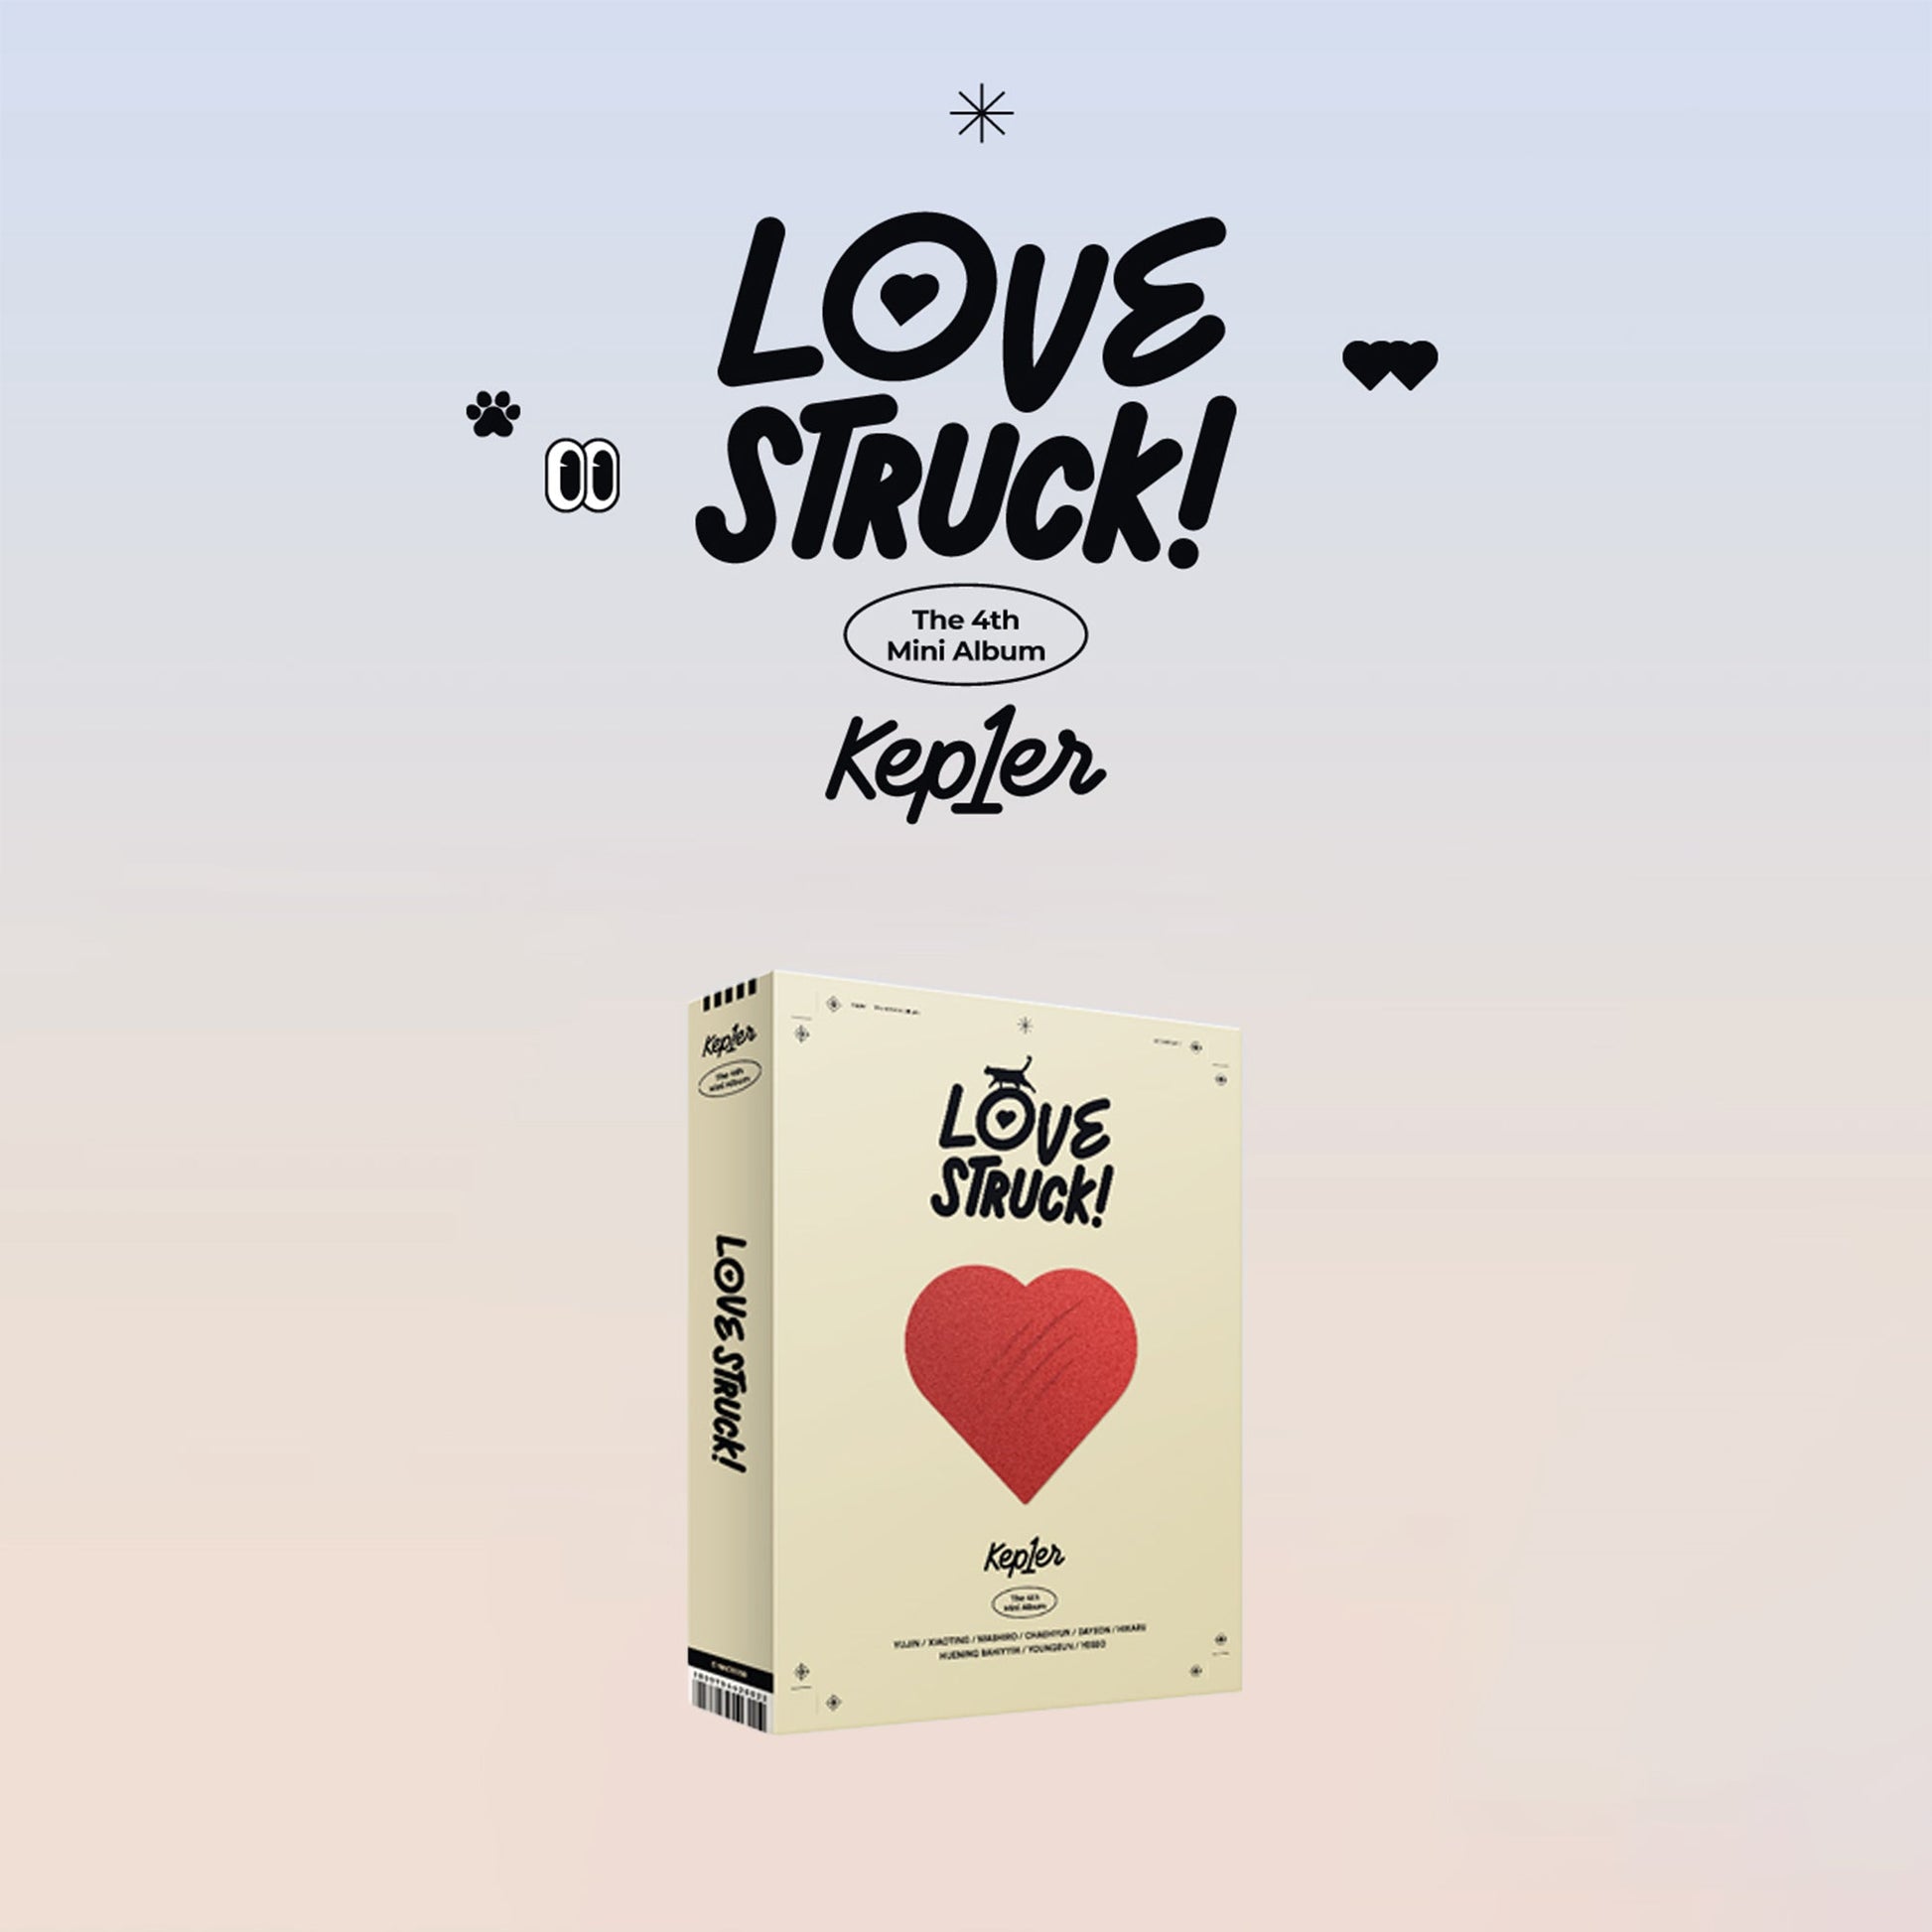 KEP1ER 4TH MINI ALBUM 'LOVESTRUCK!' LOVE STRIKE VERSION COVER